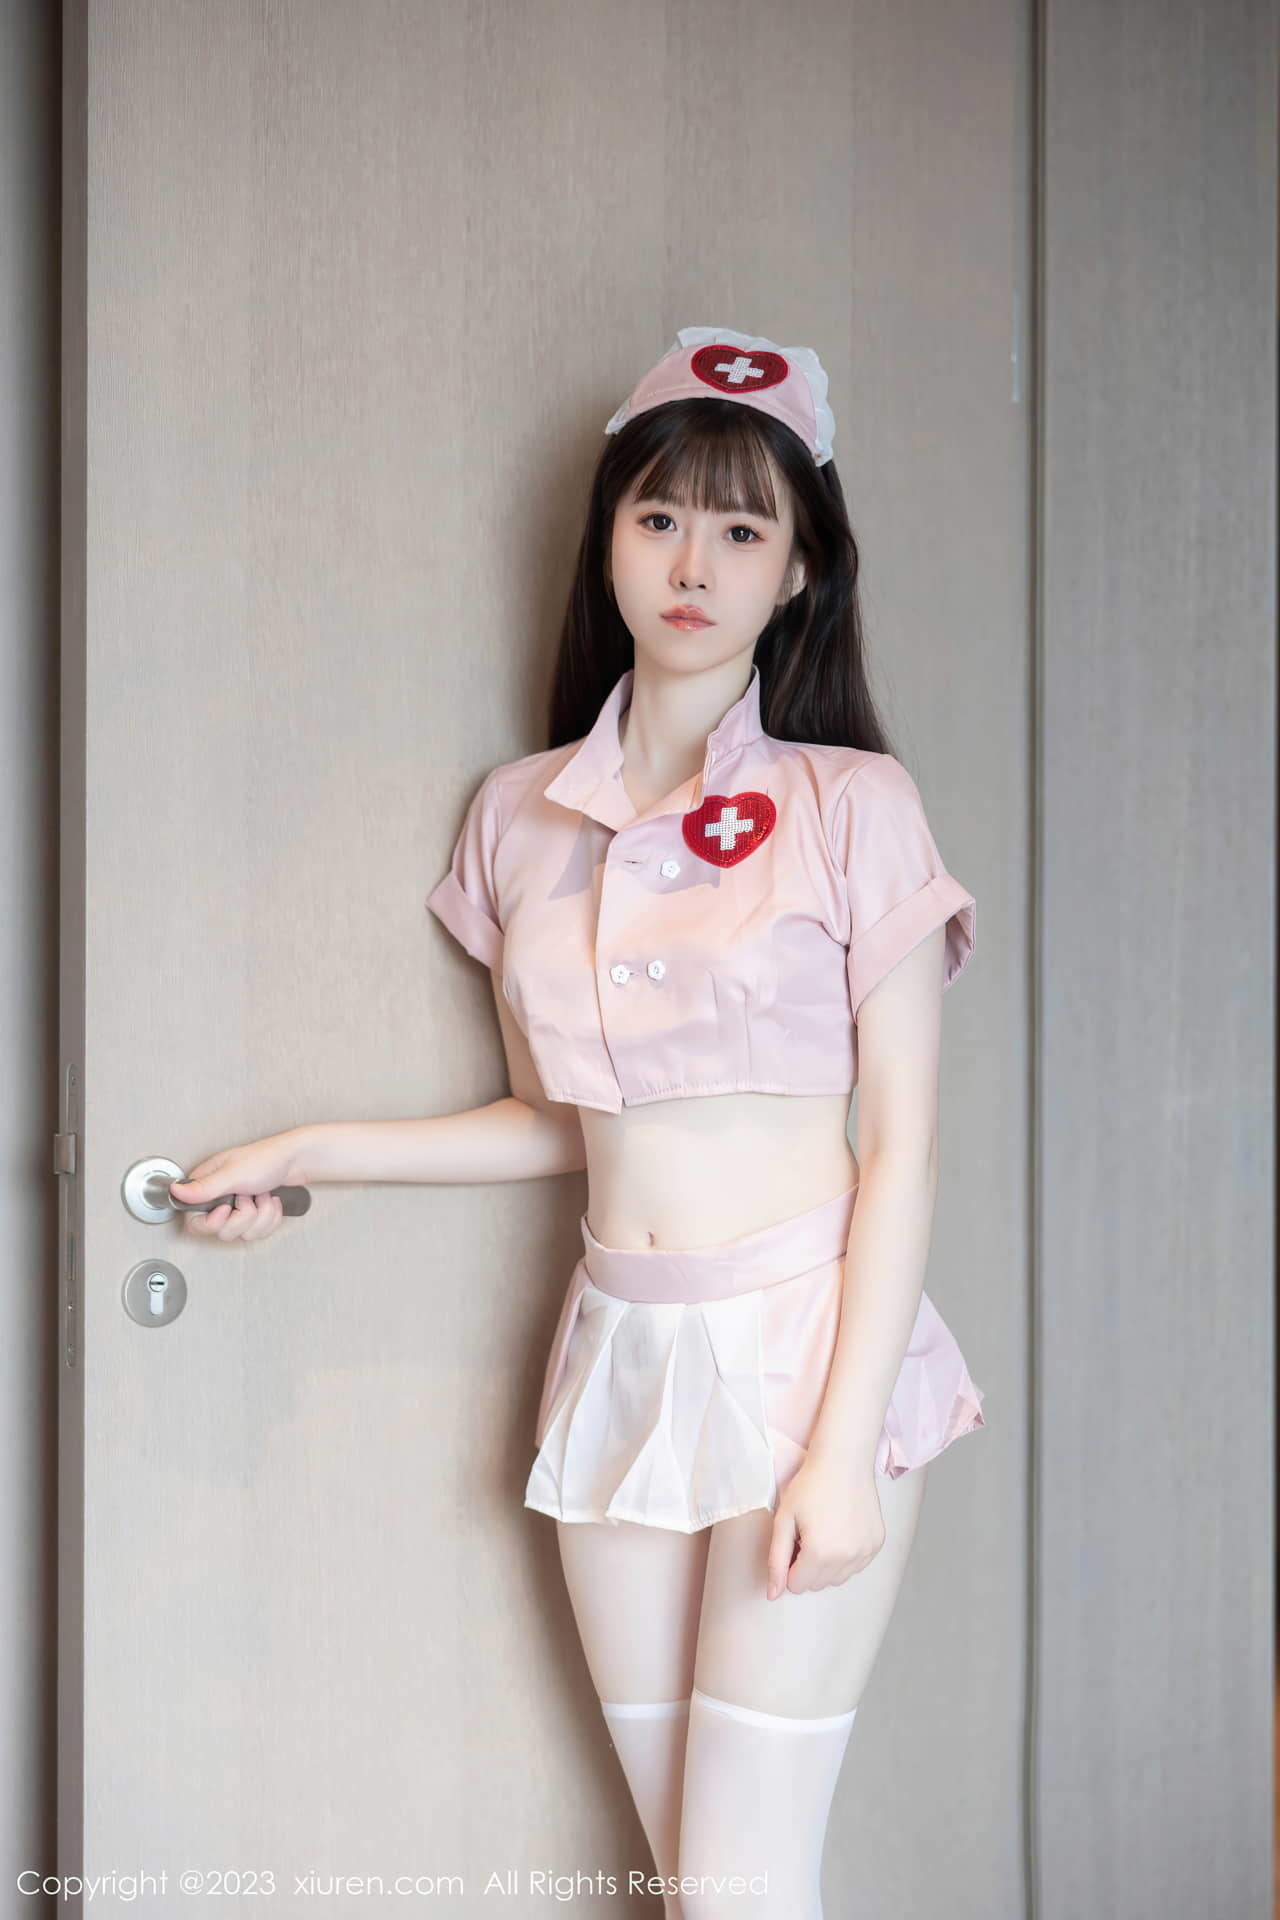 Сексуальная розовая униформа медсестры новенькой Линь Юю очаровательна и очаровательна, ее внешний вид чист и мил.